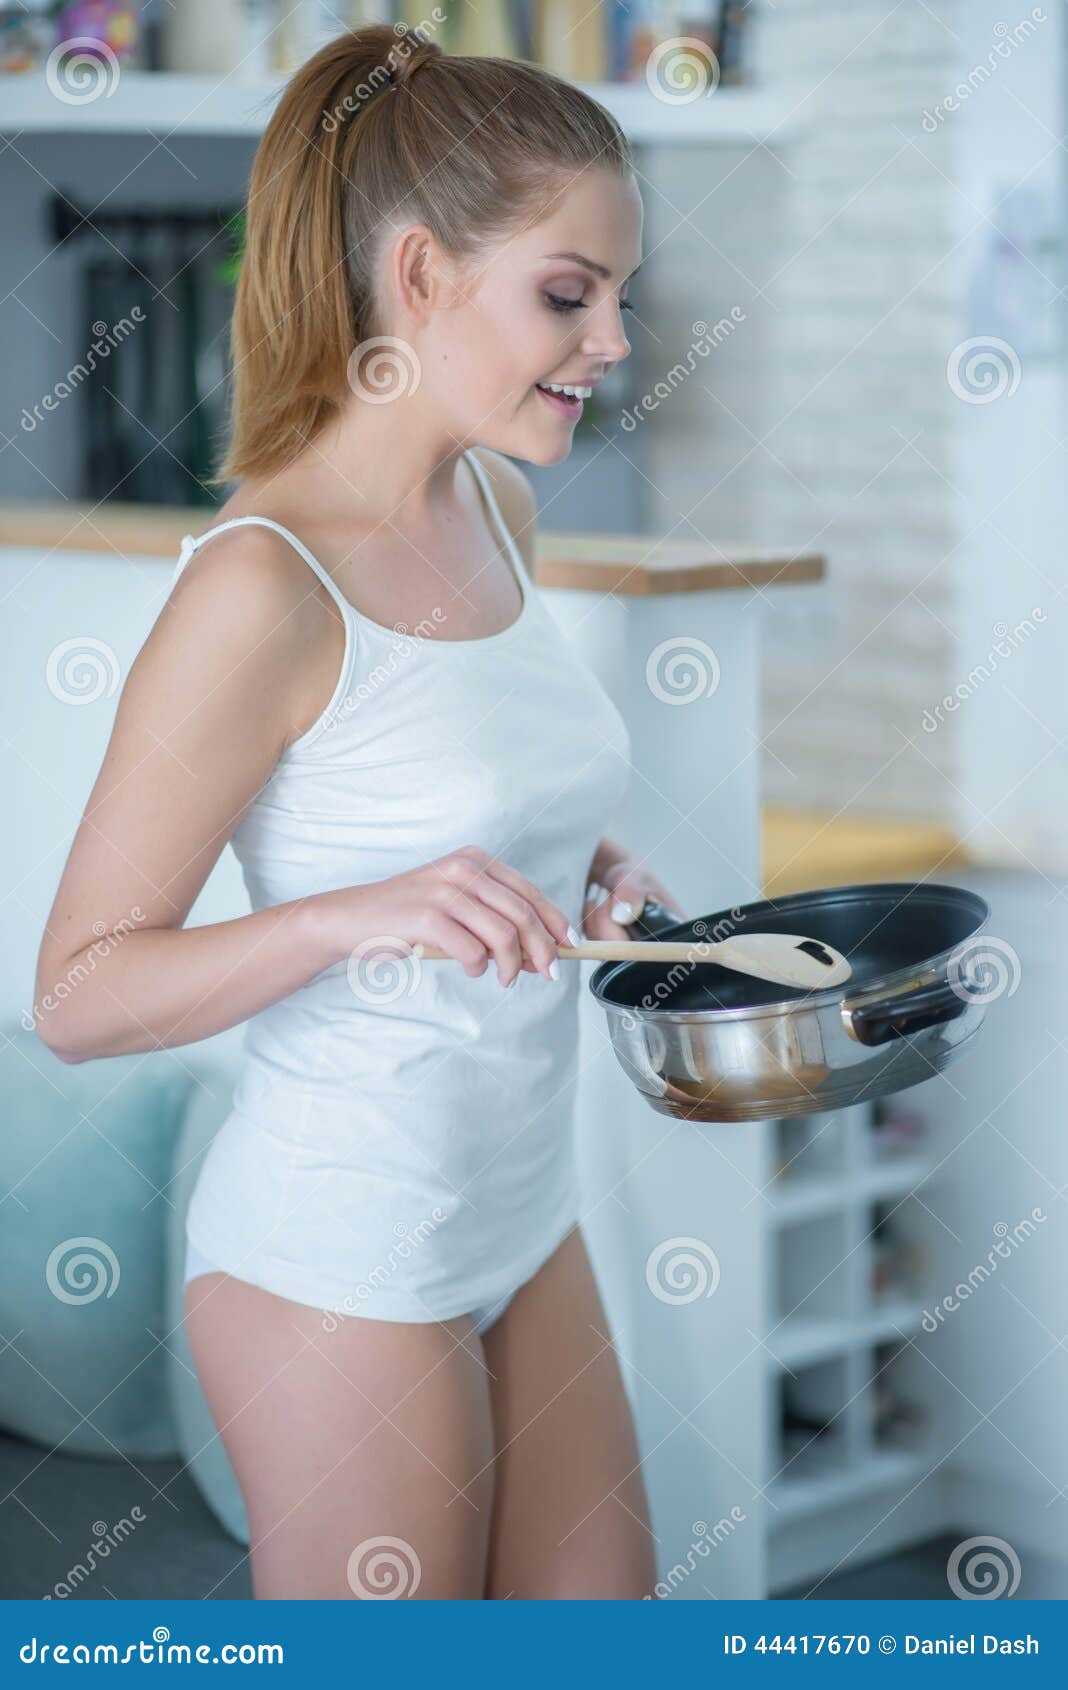 Mujer Joven En Ropa Interior Cocina Con El Sartén Foto de archivo - Imagen cocina, interior: 44417670